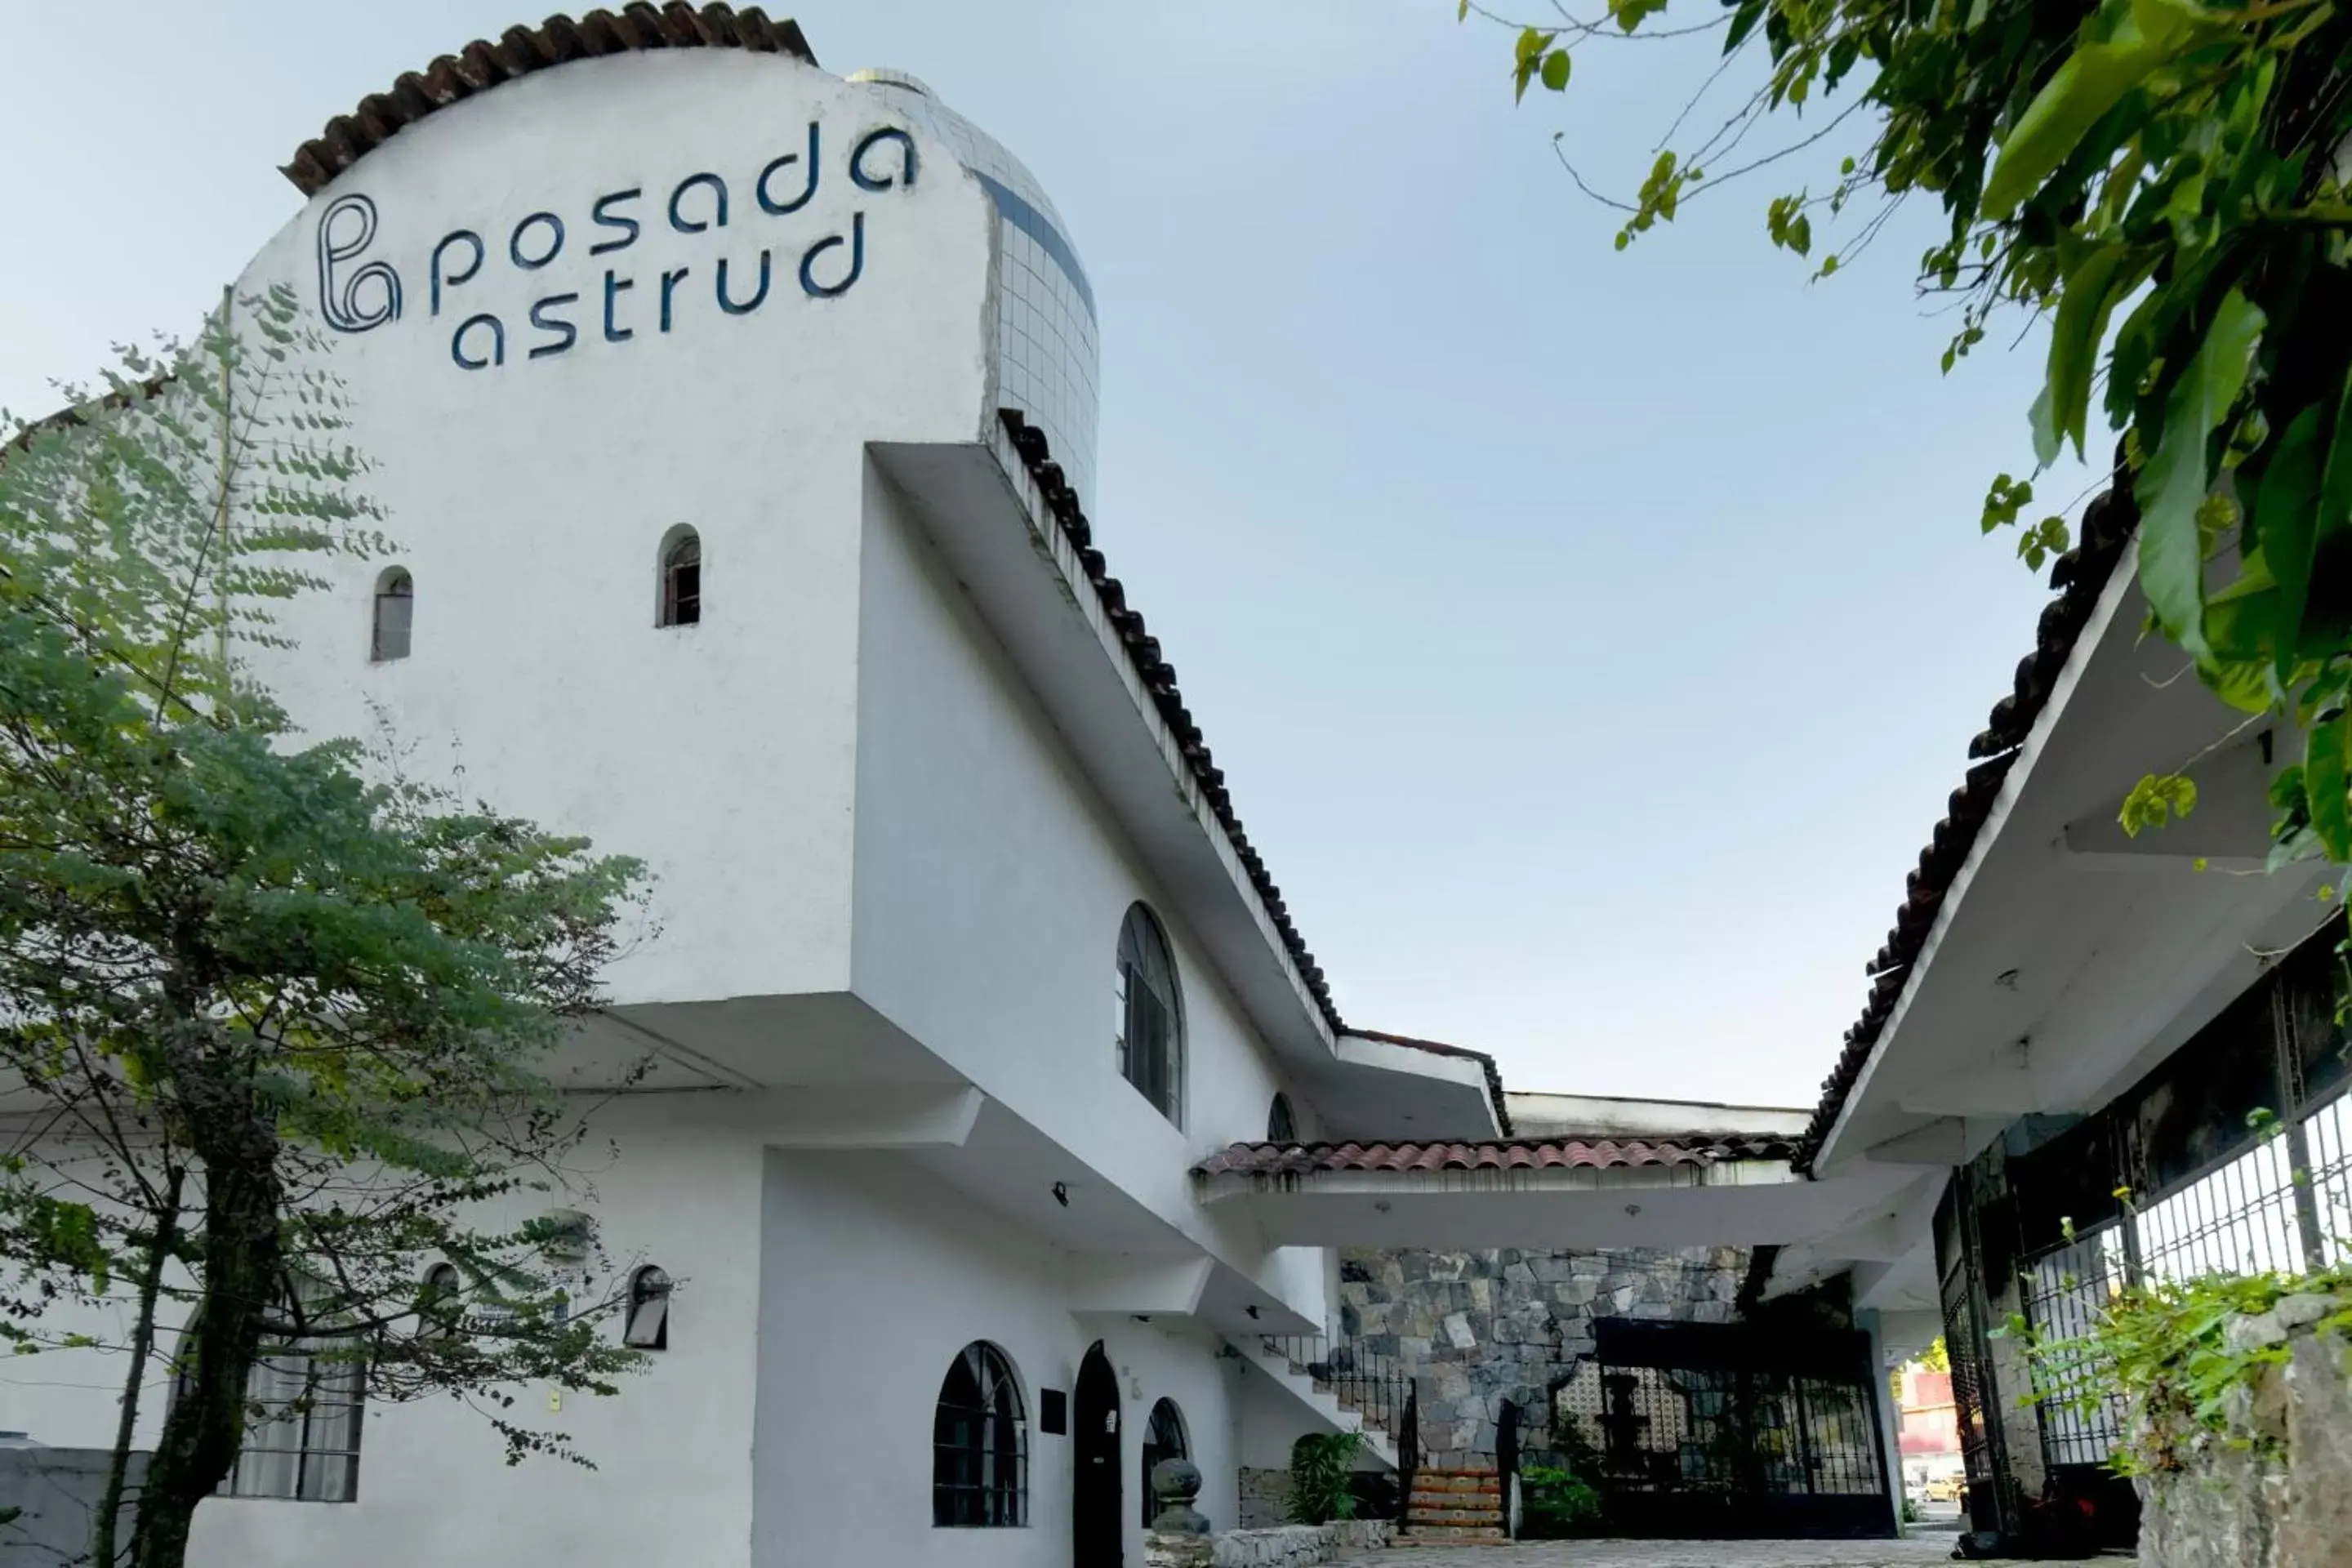 Facade/entrance, Property Building in OYO Posada Astrud,Cuetzalan